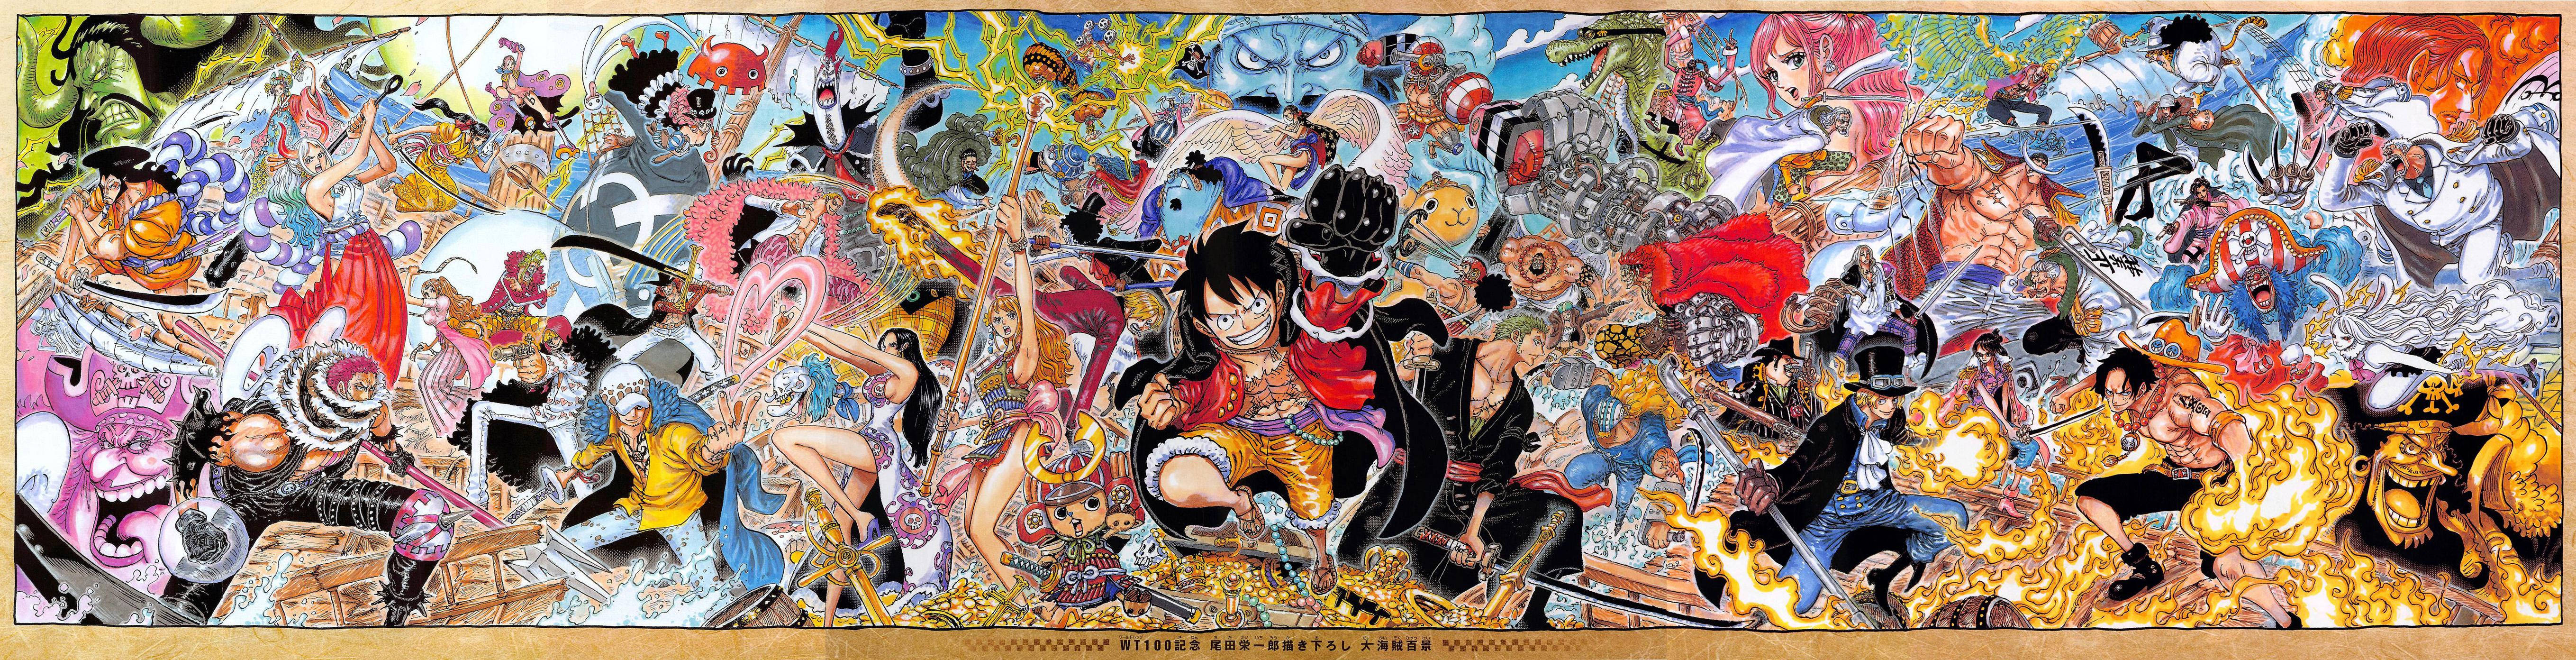 Posterda Série De Anime One Piece Para Foto De Perfil De Computador Ou Celular. Papel de Parede